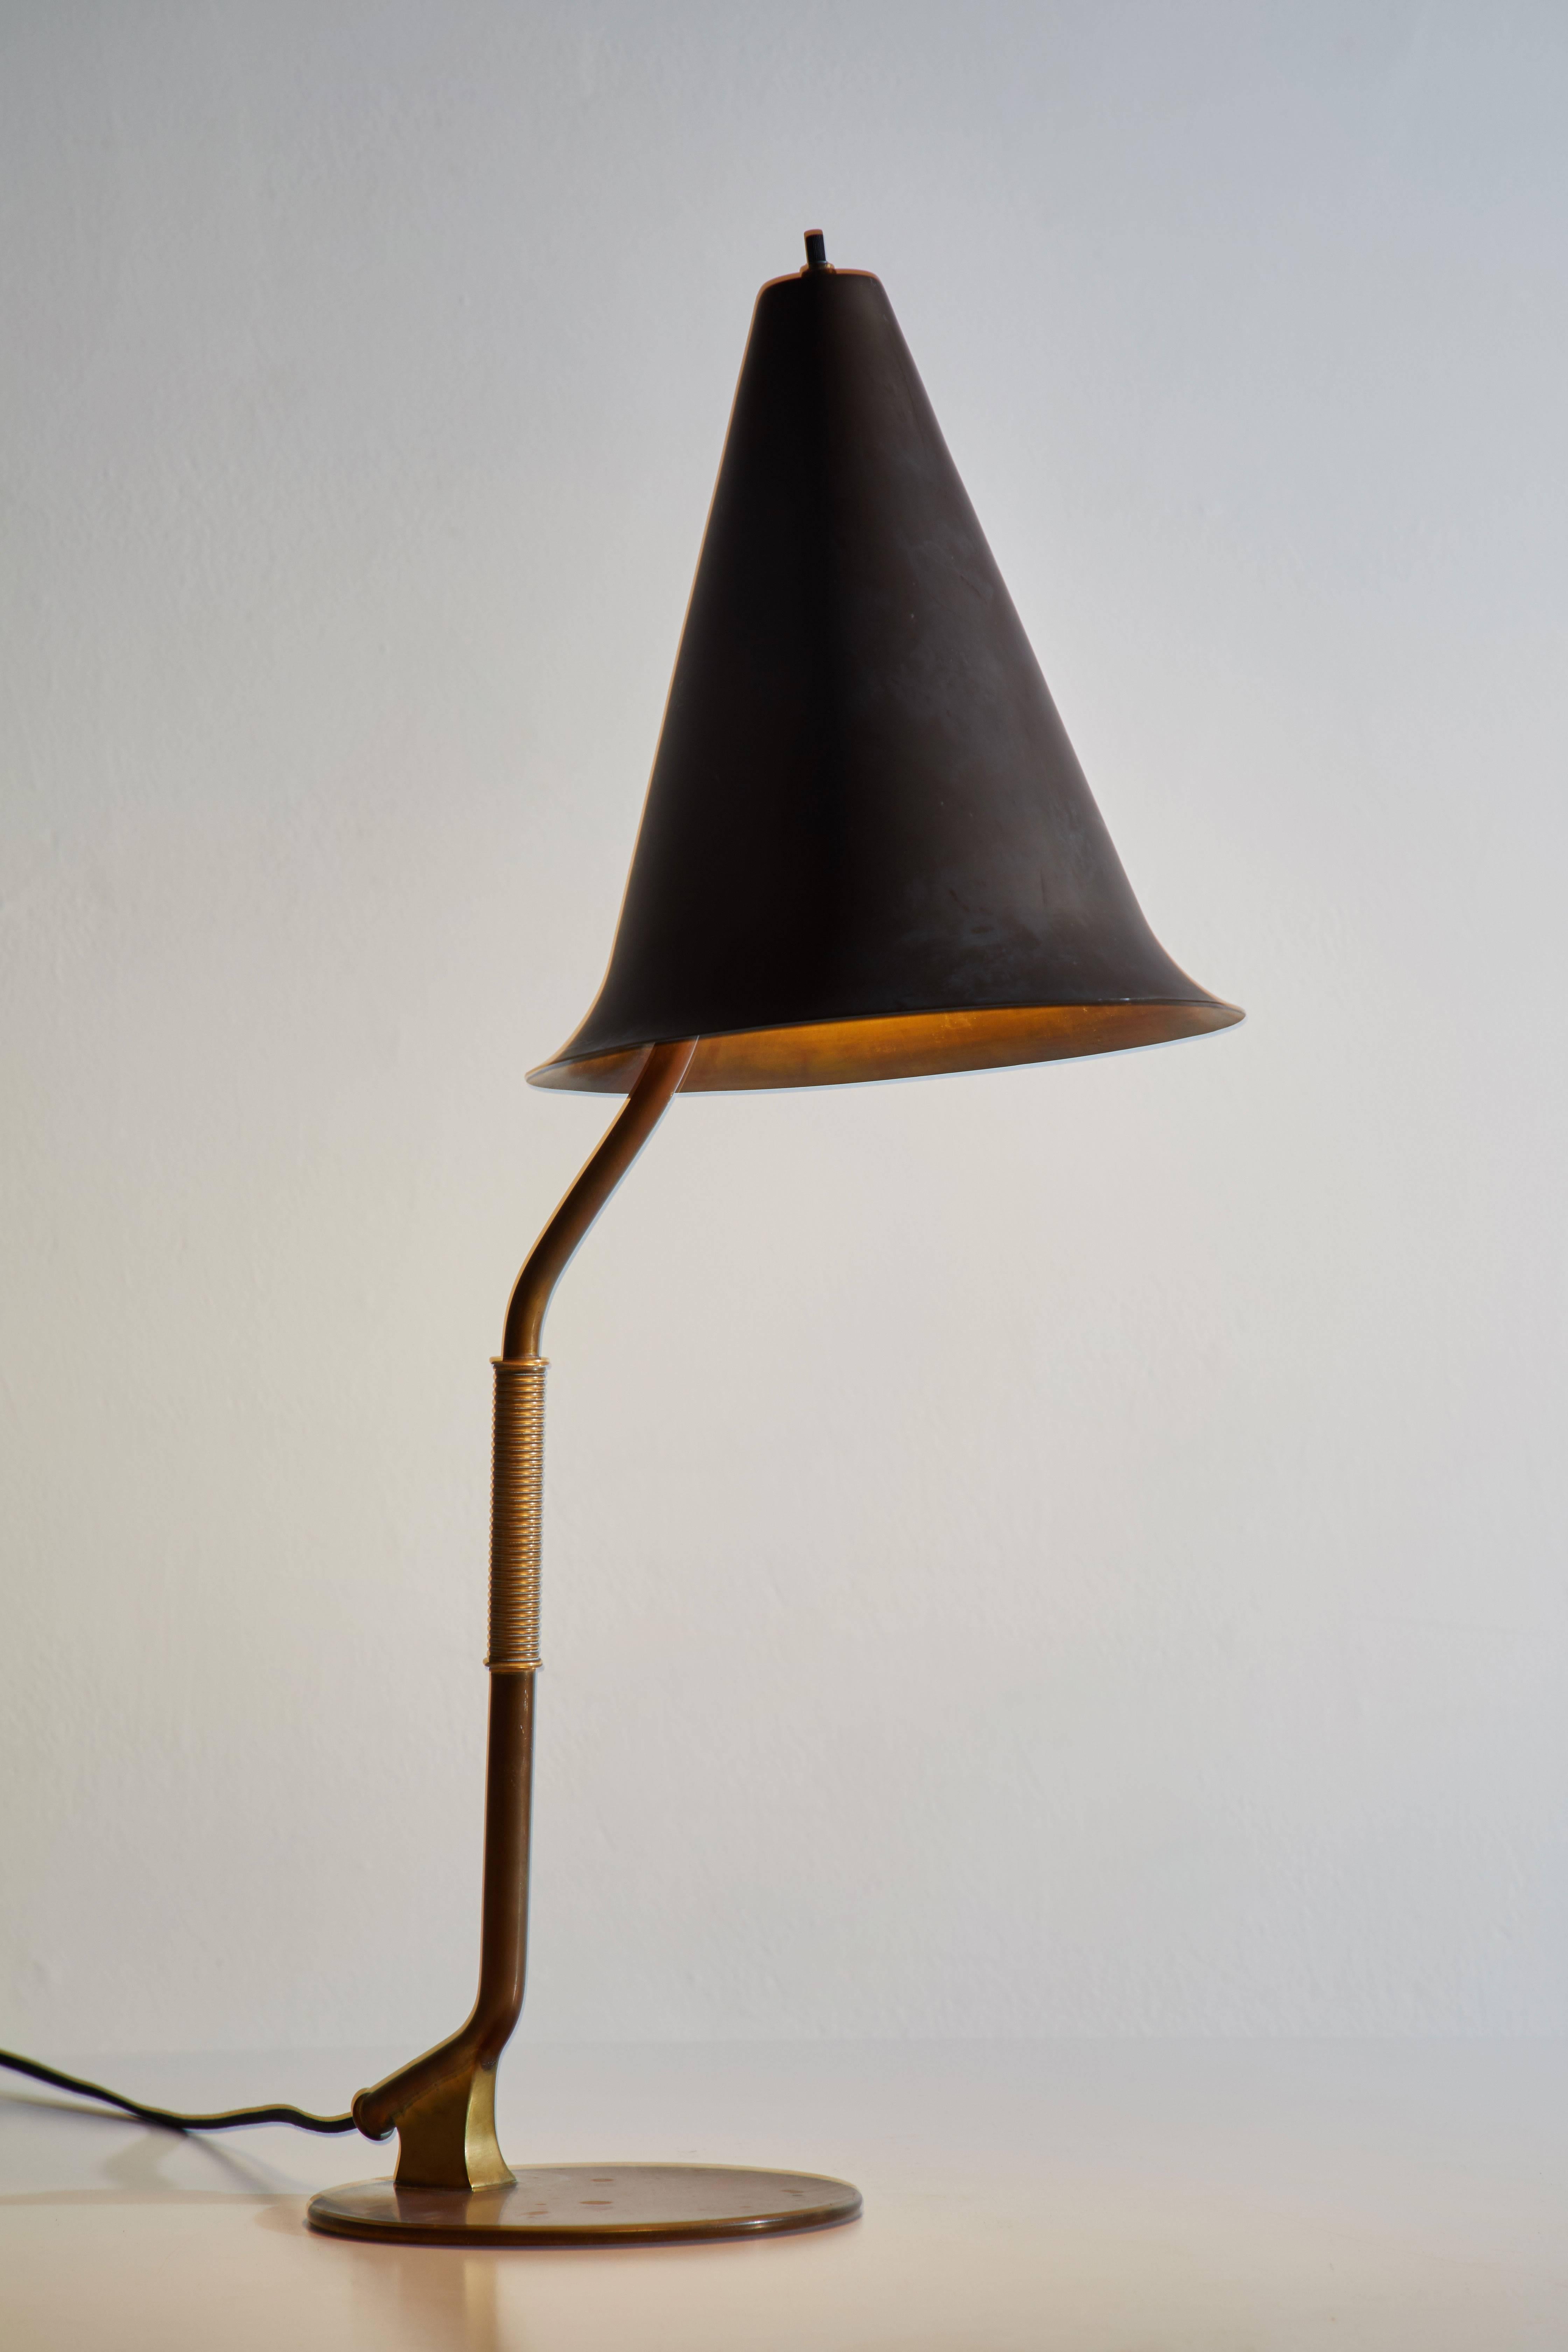 Rare et importante lampe de table conçue en Suède, vers les années 1940. Recâblé avec un cordon noir à torsion française. Magnifique laiton patiné. La base de la lampe porte encore l'estampille originale Made in Sweden. Nécessite une ampoule E27 75w